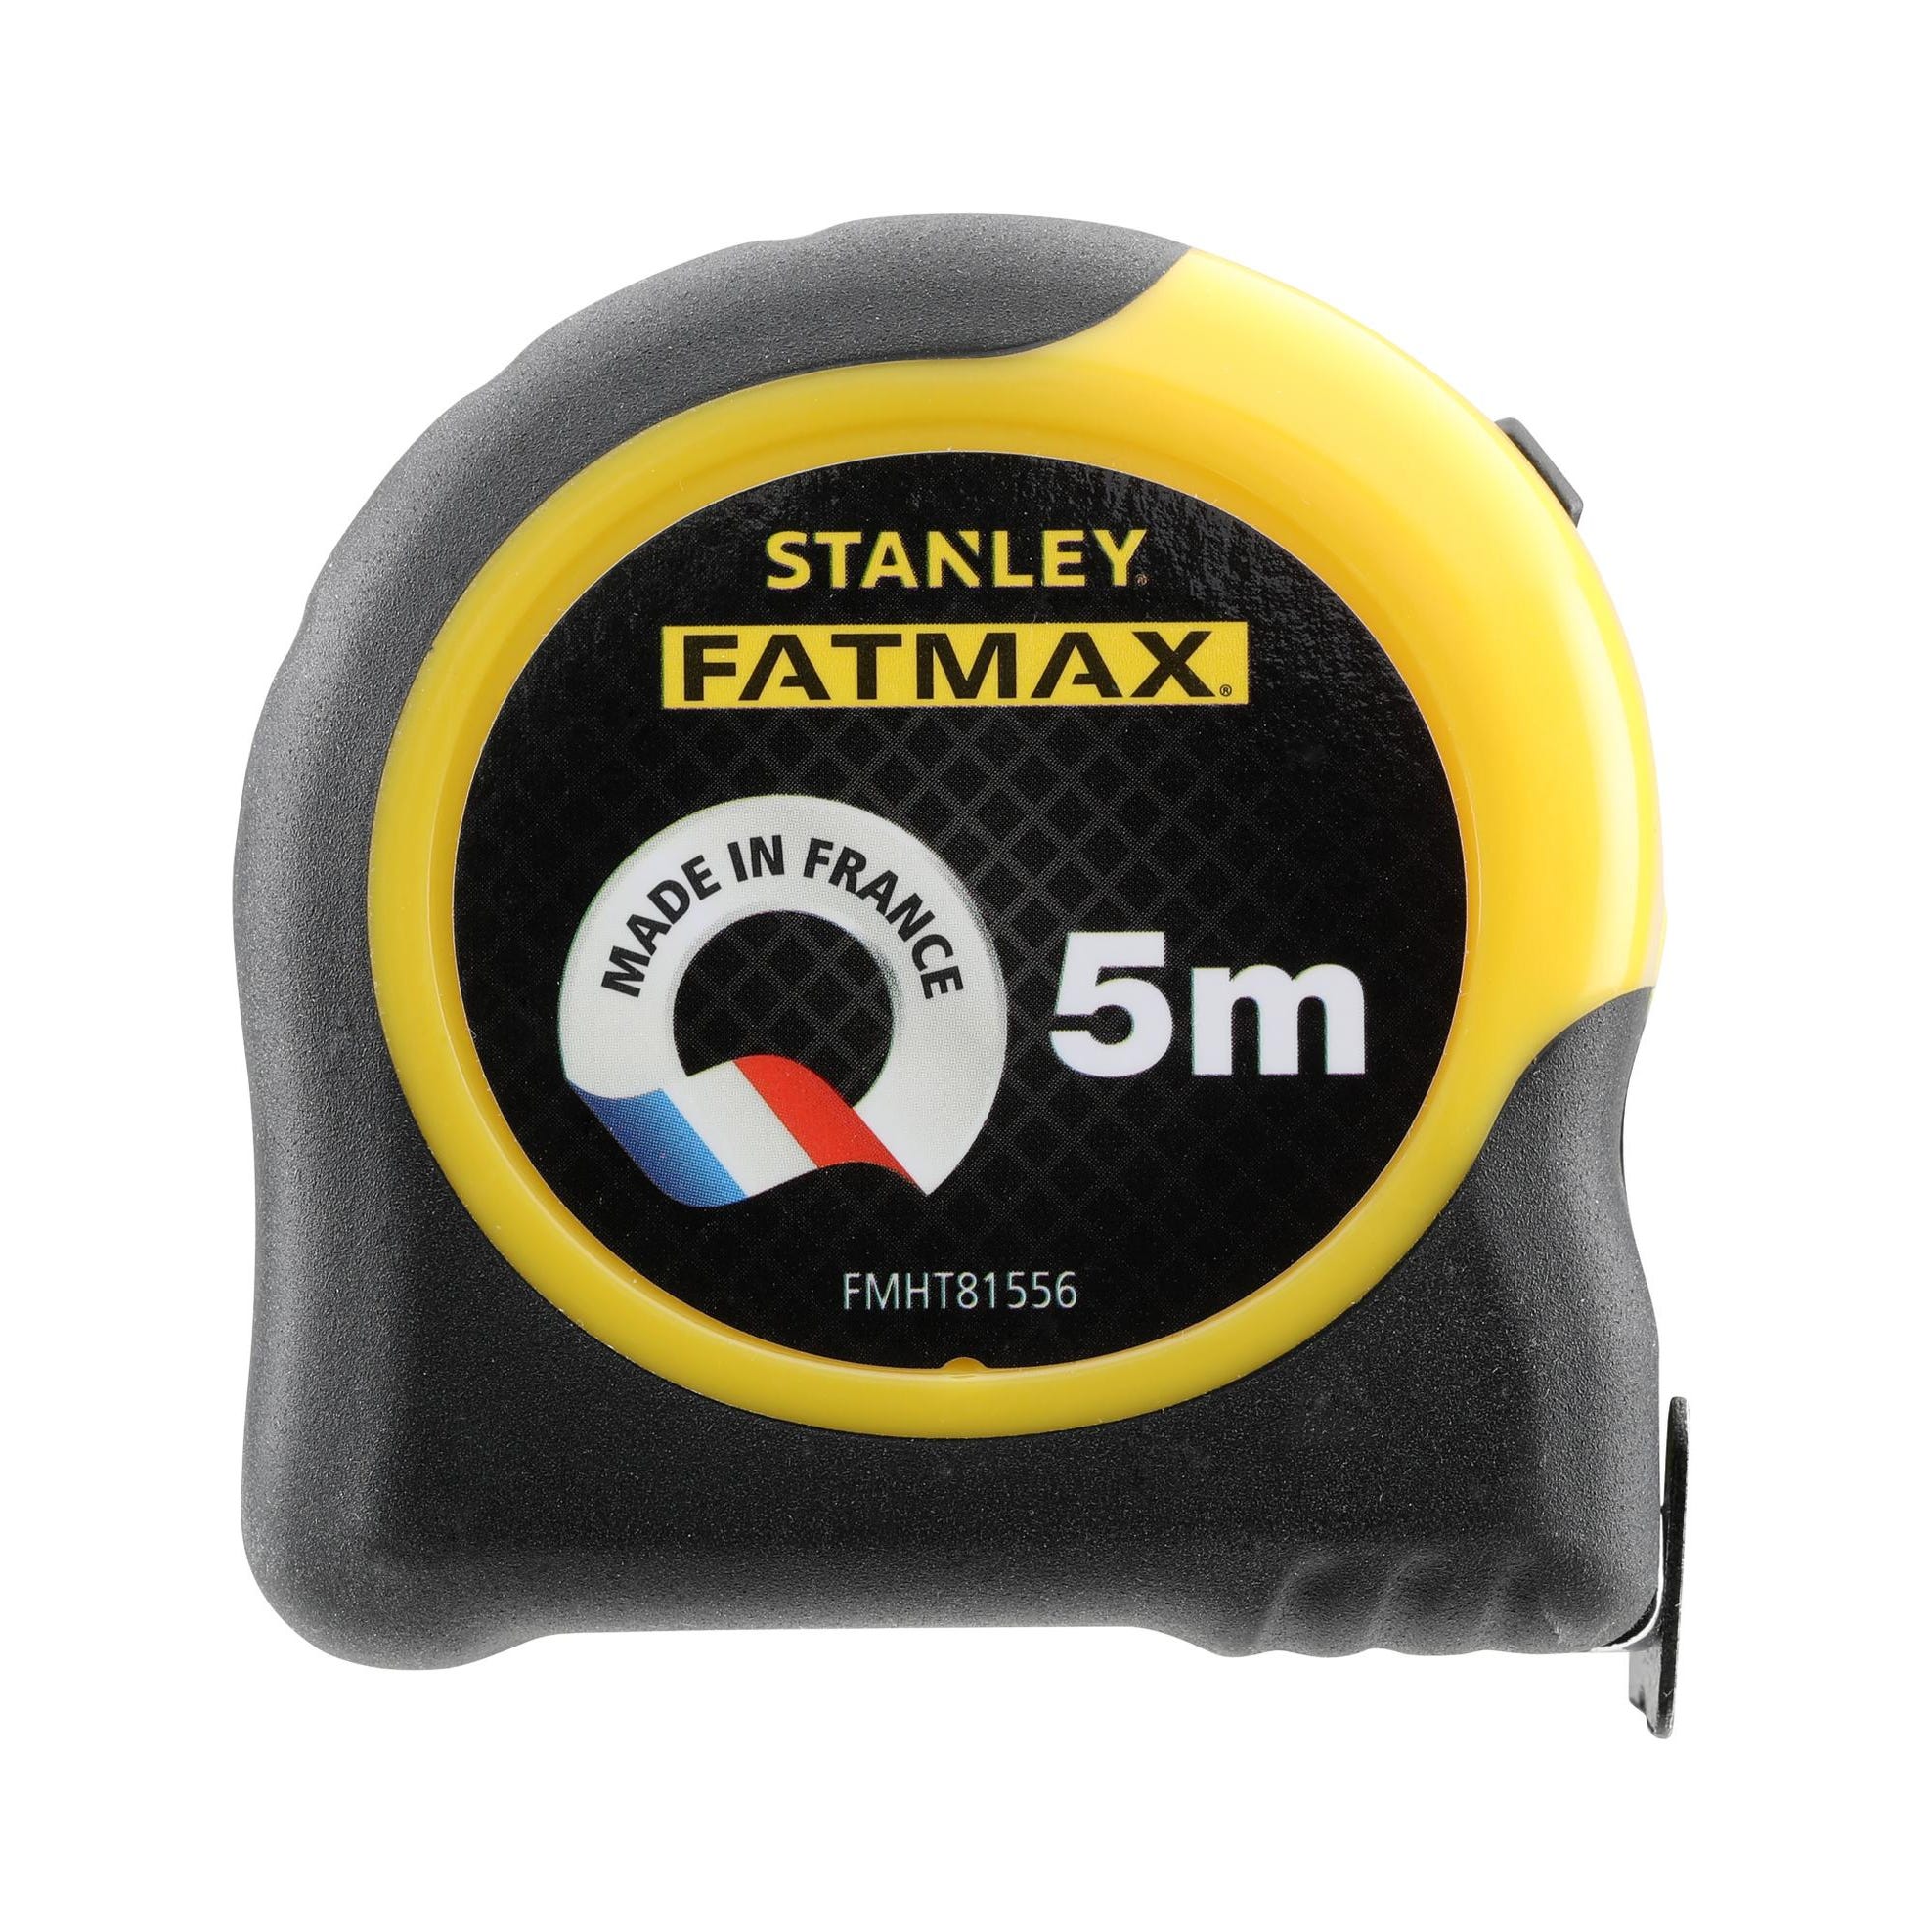 Mètre ruban Stanley Fatmax 5 mètres x 19 mm classe 2 1-33-684